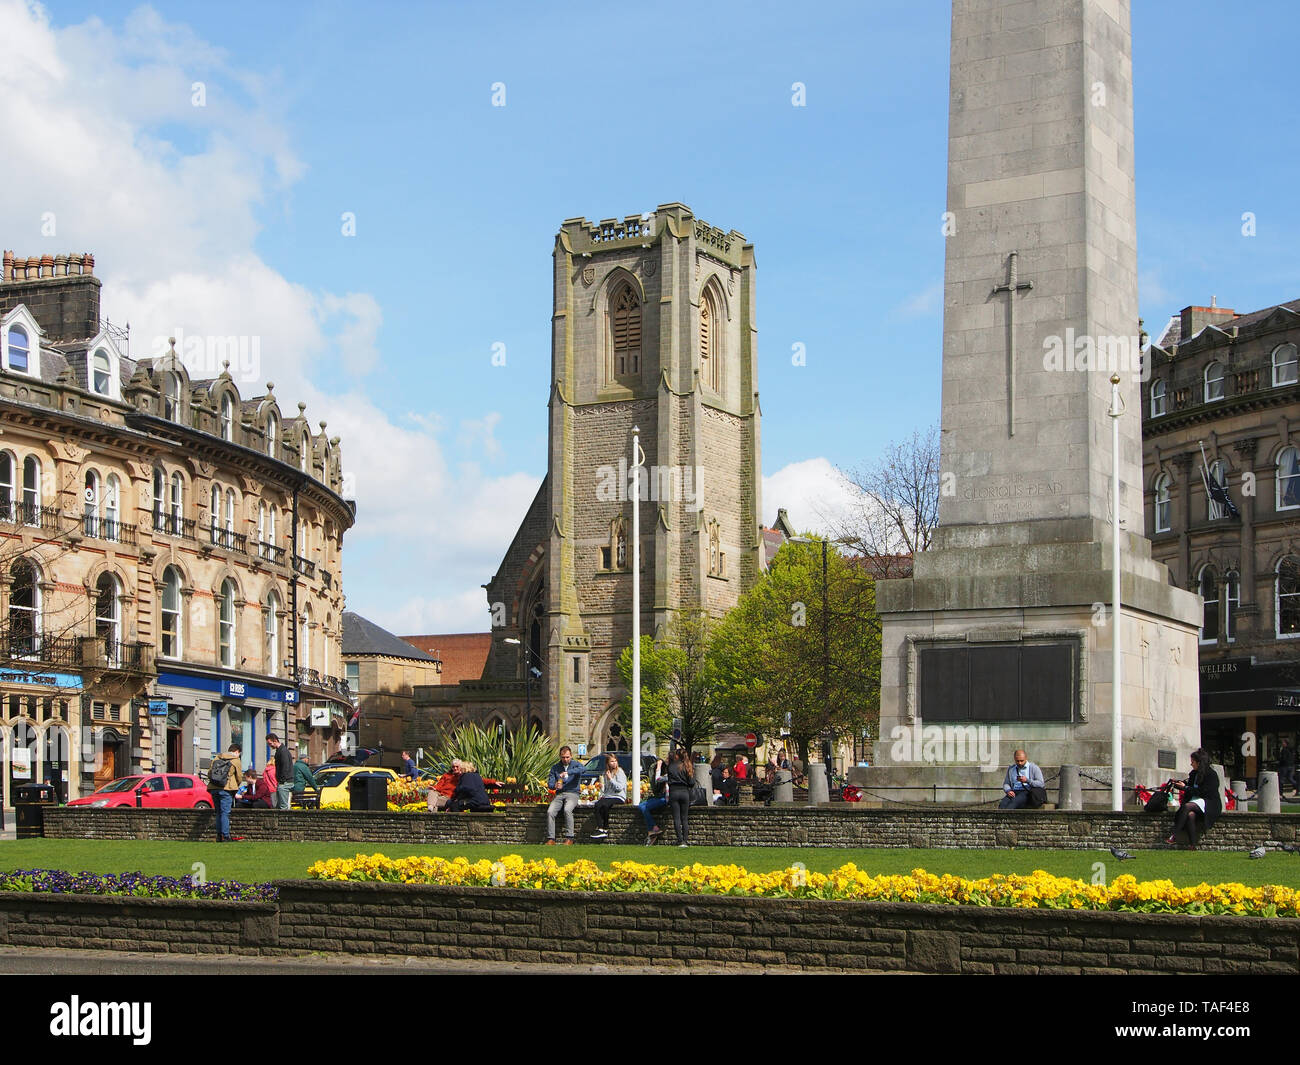 Le persone che si godono il sole su una giornata di primavera presso la chiesa e il cenotafio nel centro di Harrogate, nello Yorkshire, Inghilterra, Regno Unito. Foto Stock